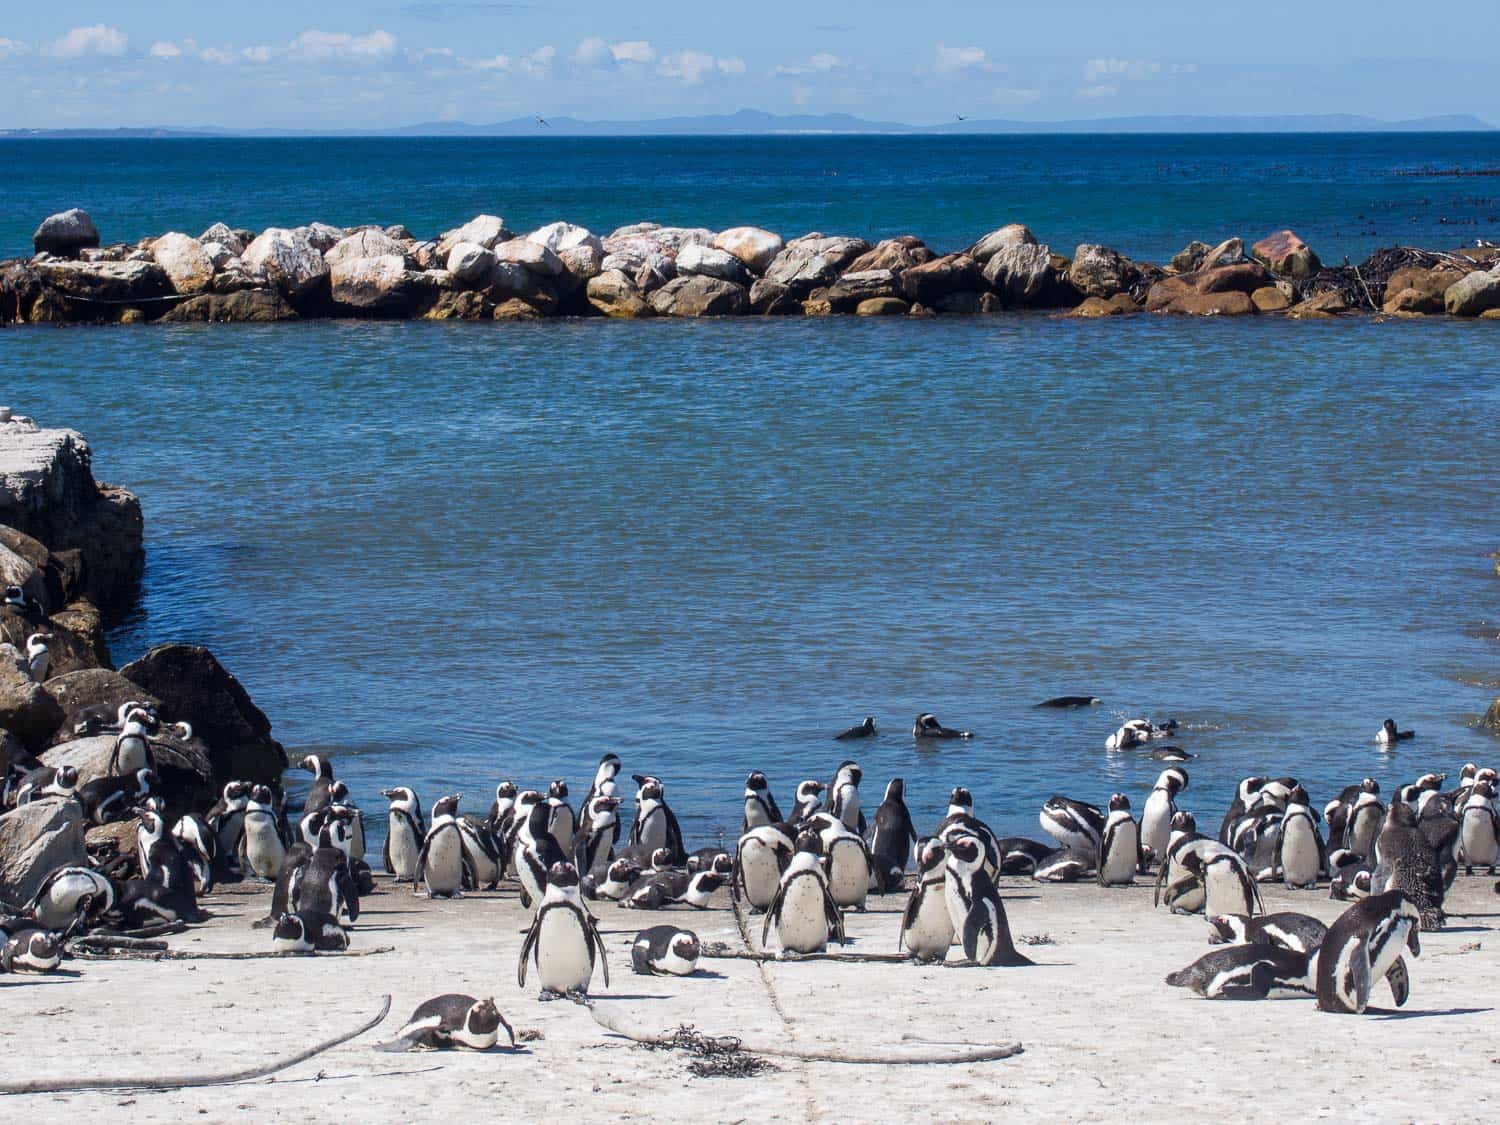 Penguins at Stony Point near Betty's Bay